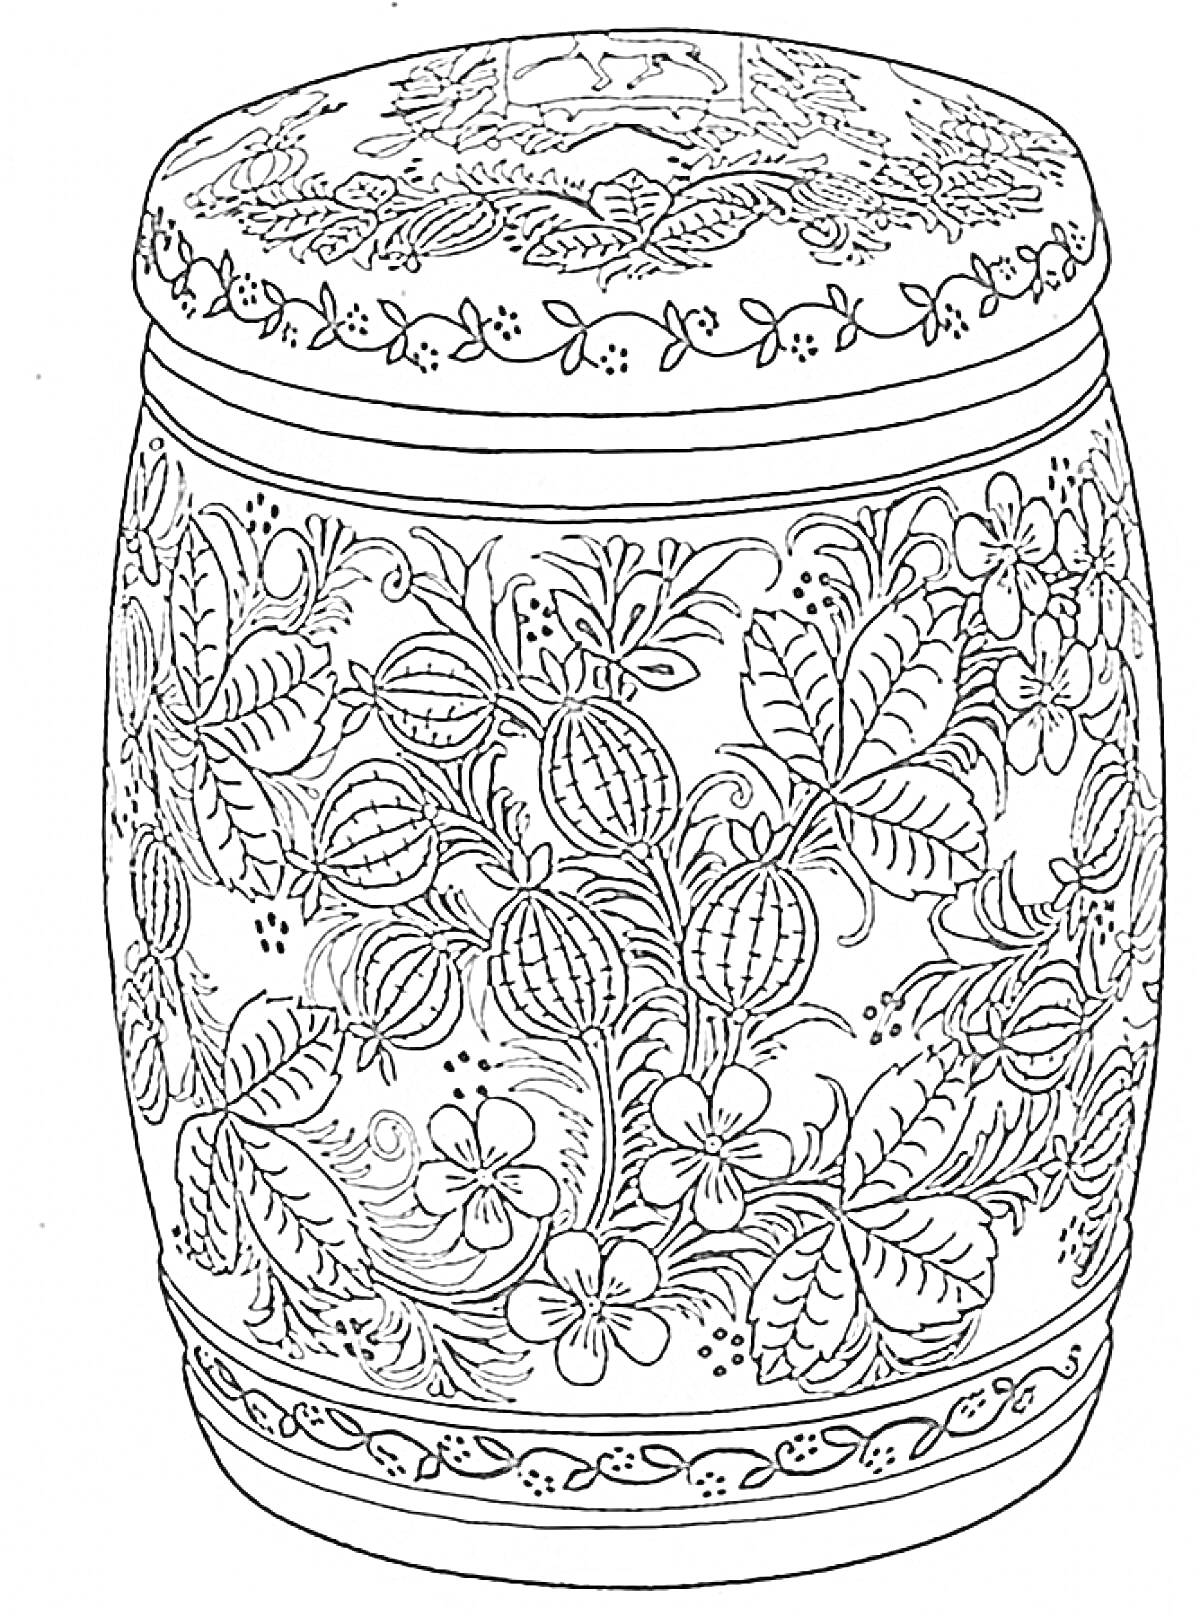 Раскраска Бочка с хохломской росписью, листья, цветы, ягоды